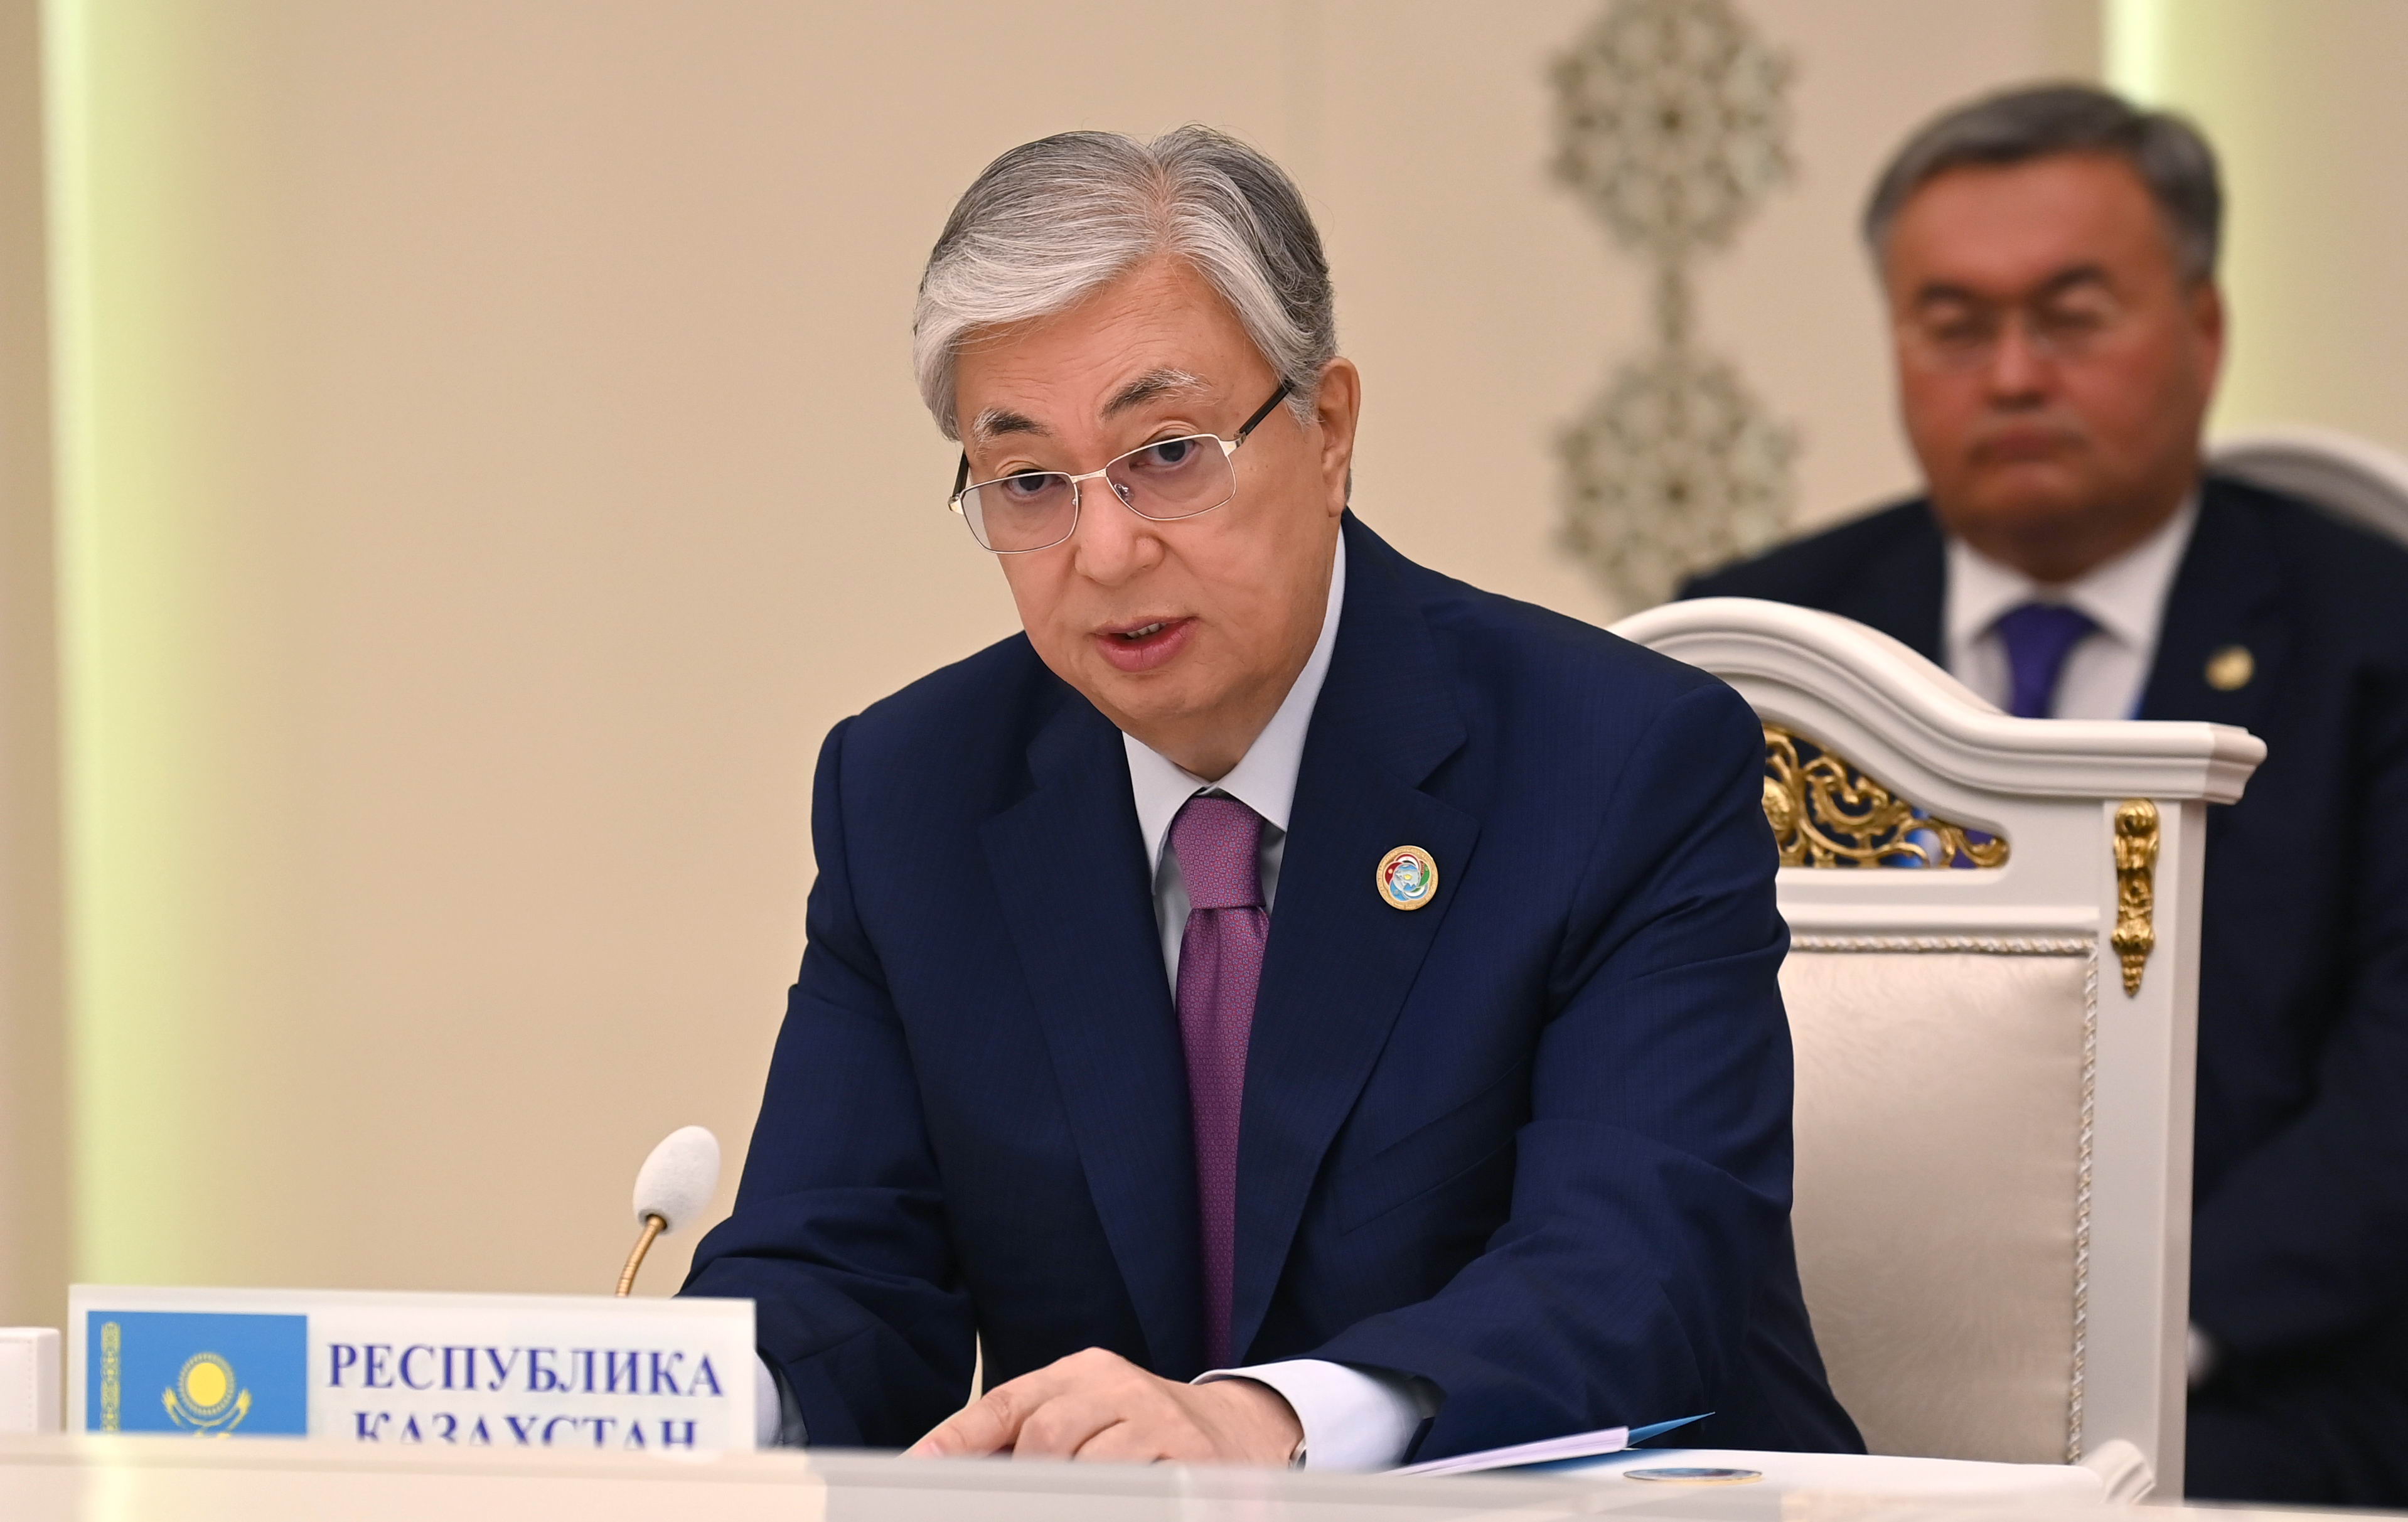 Опубликована речь Токаева на встрече глав государств Центральной Азии